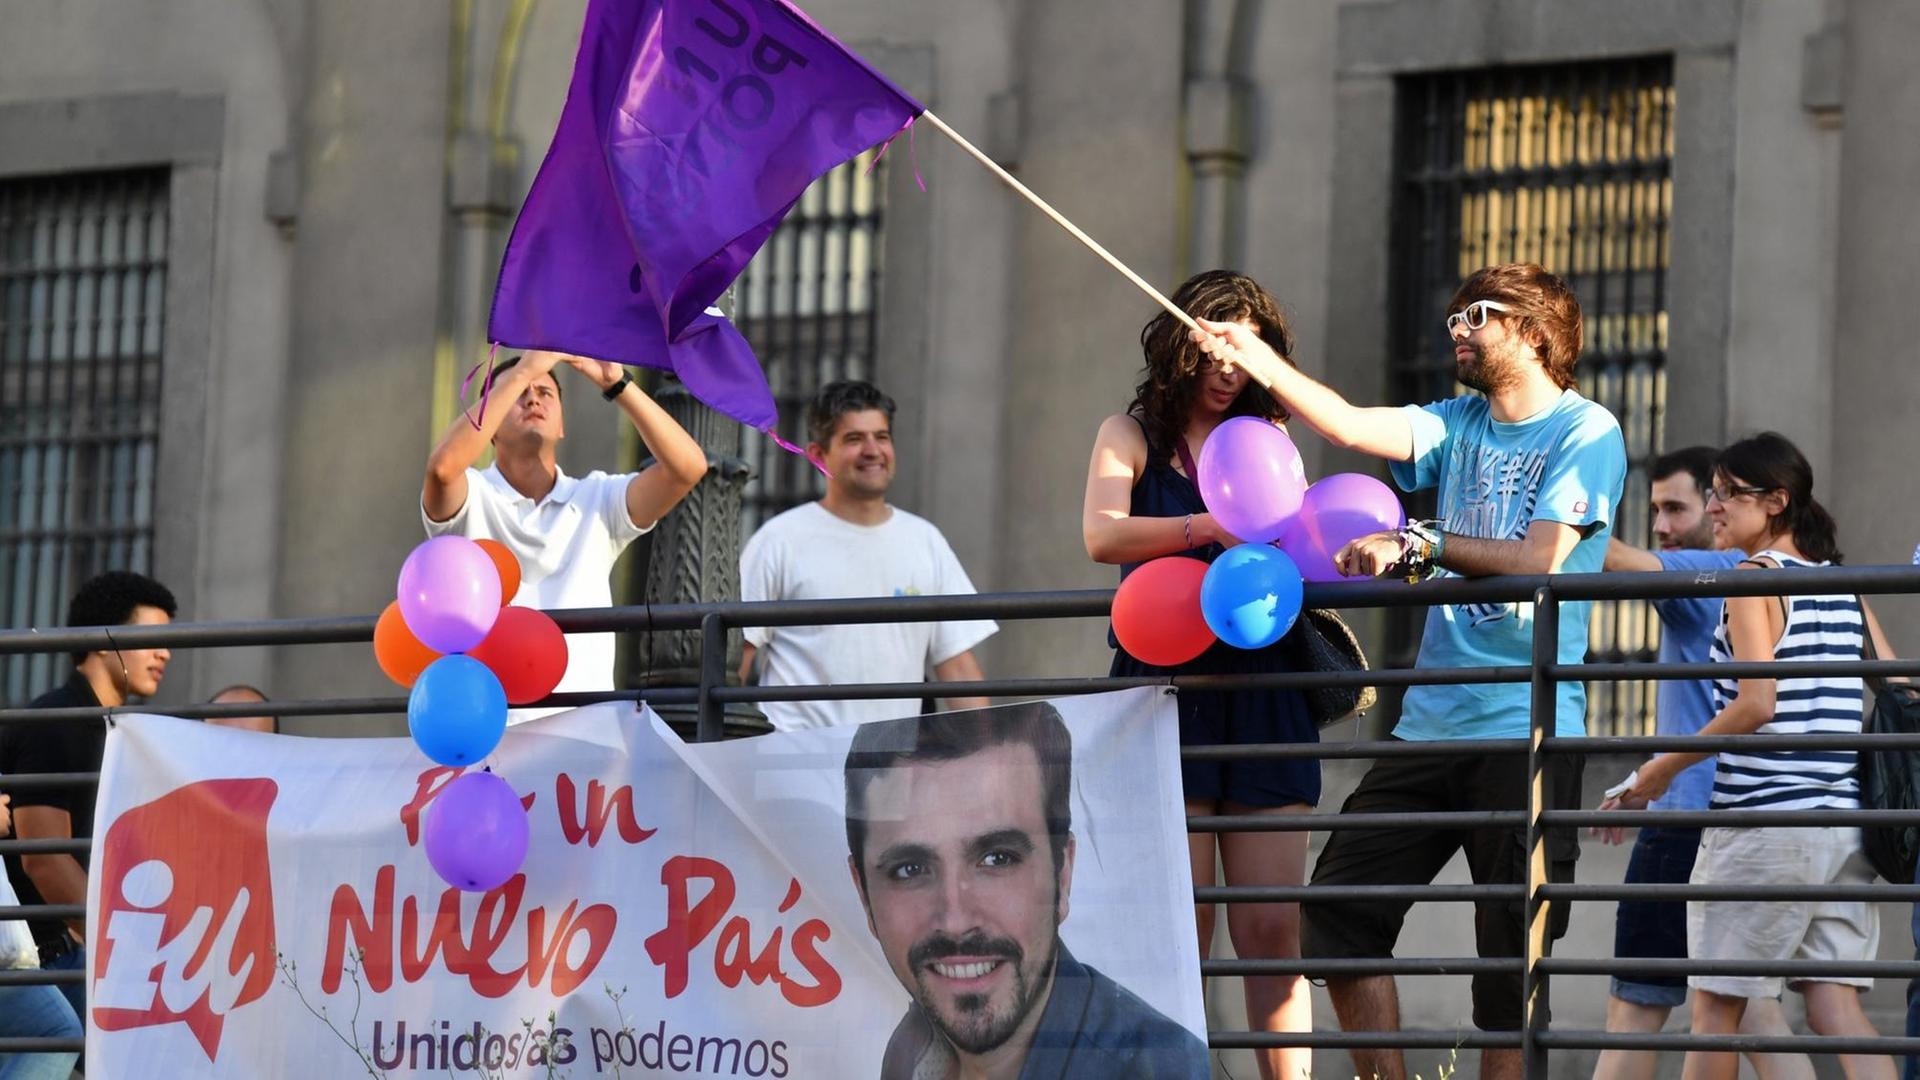 Ein Anhänger der linken Podemos-Partei schwenkt am Wahltag in Madrid eine Fahne.